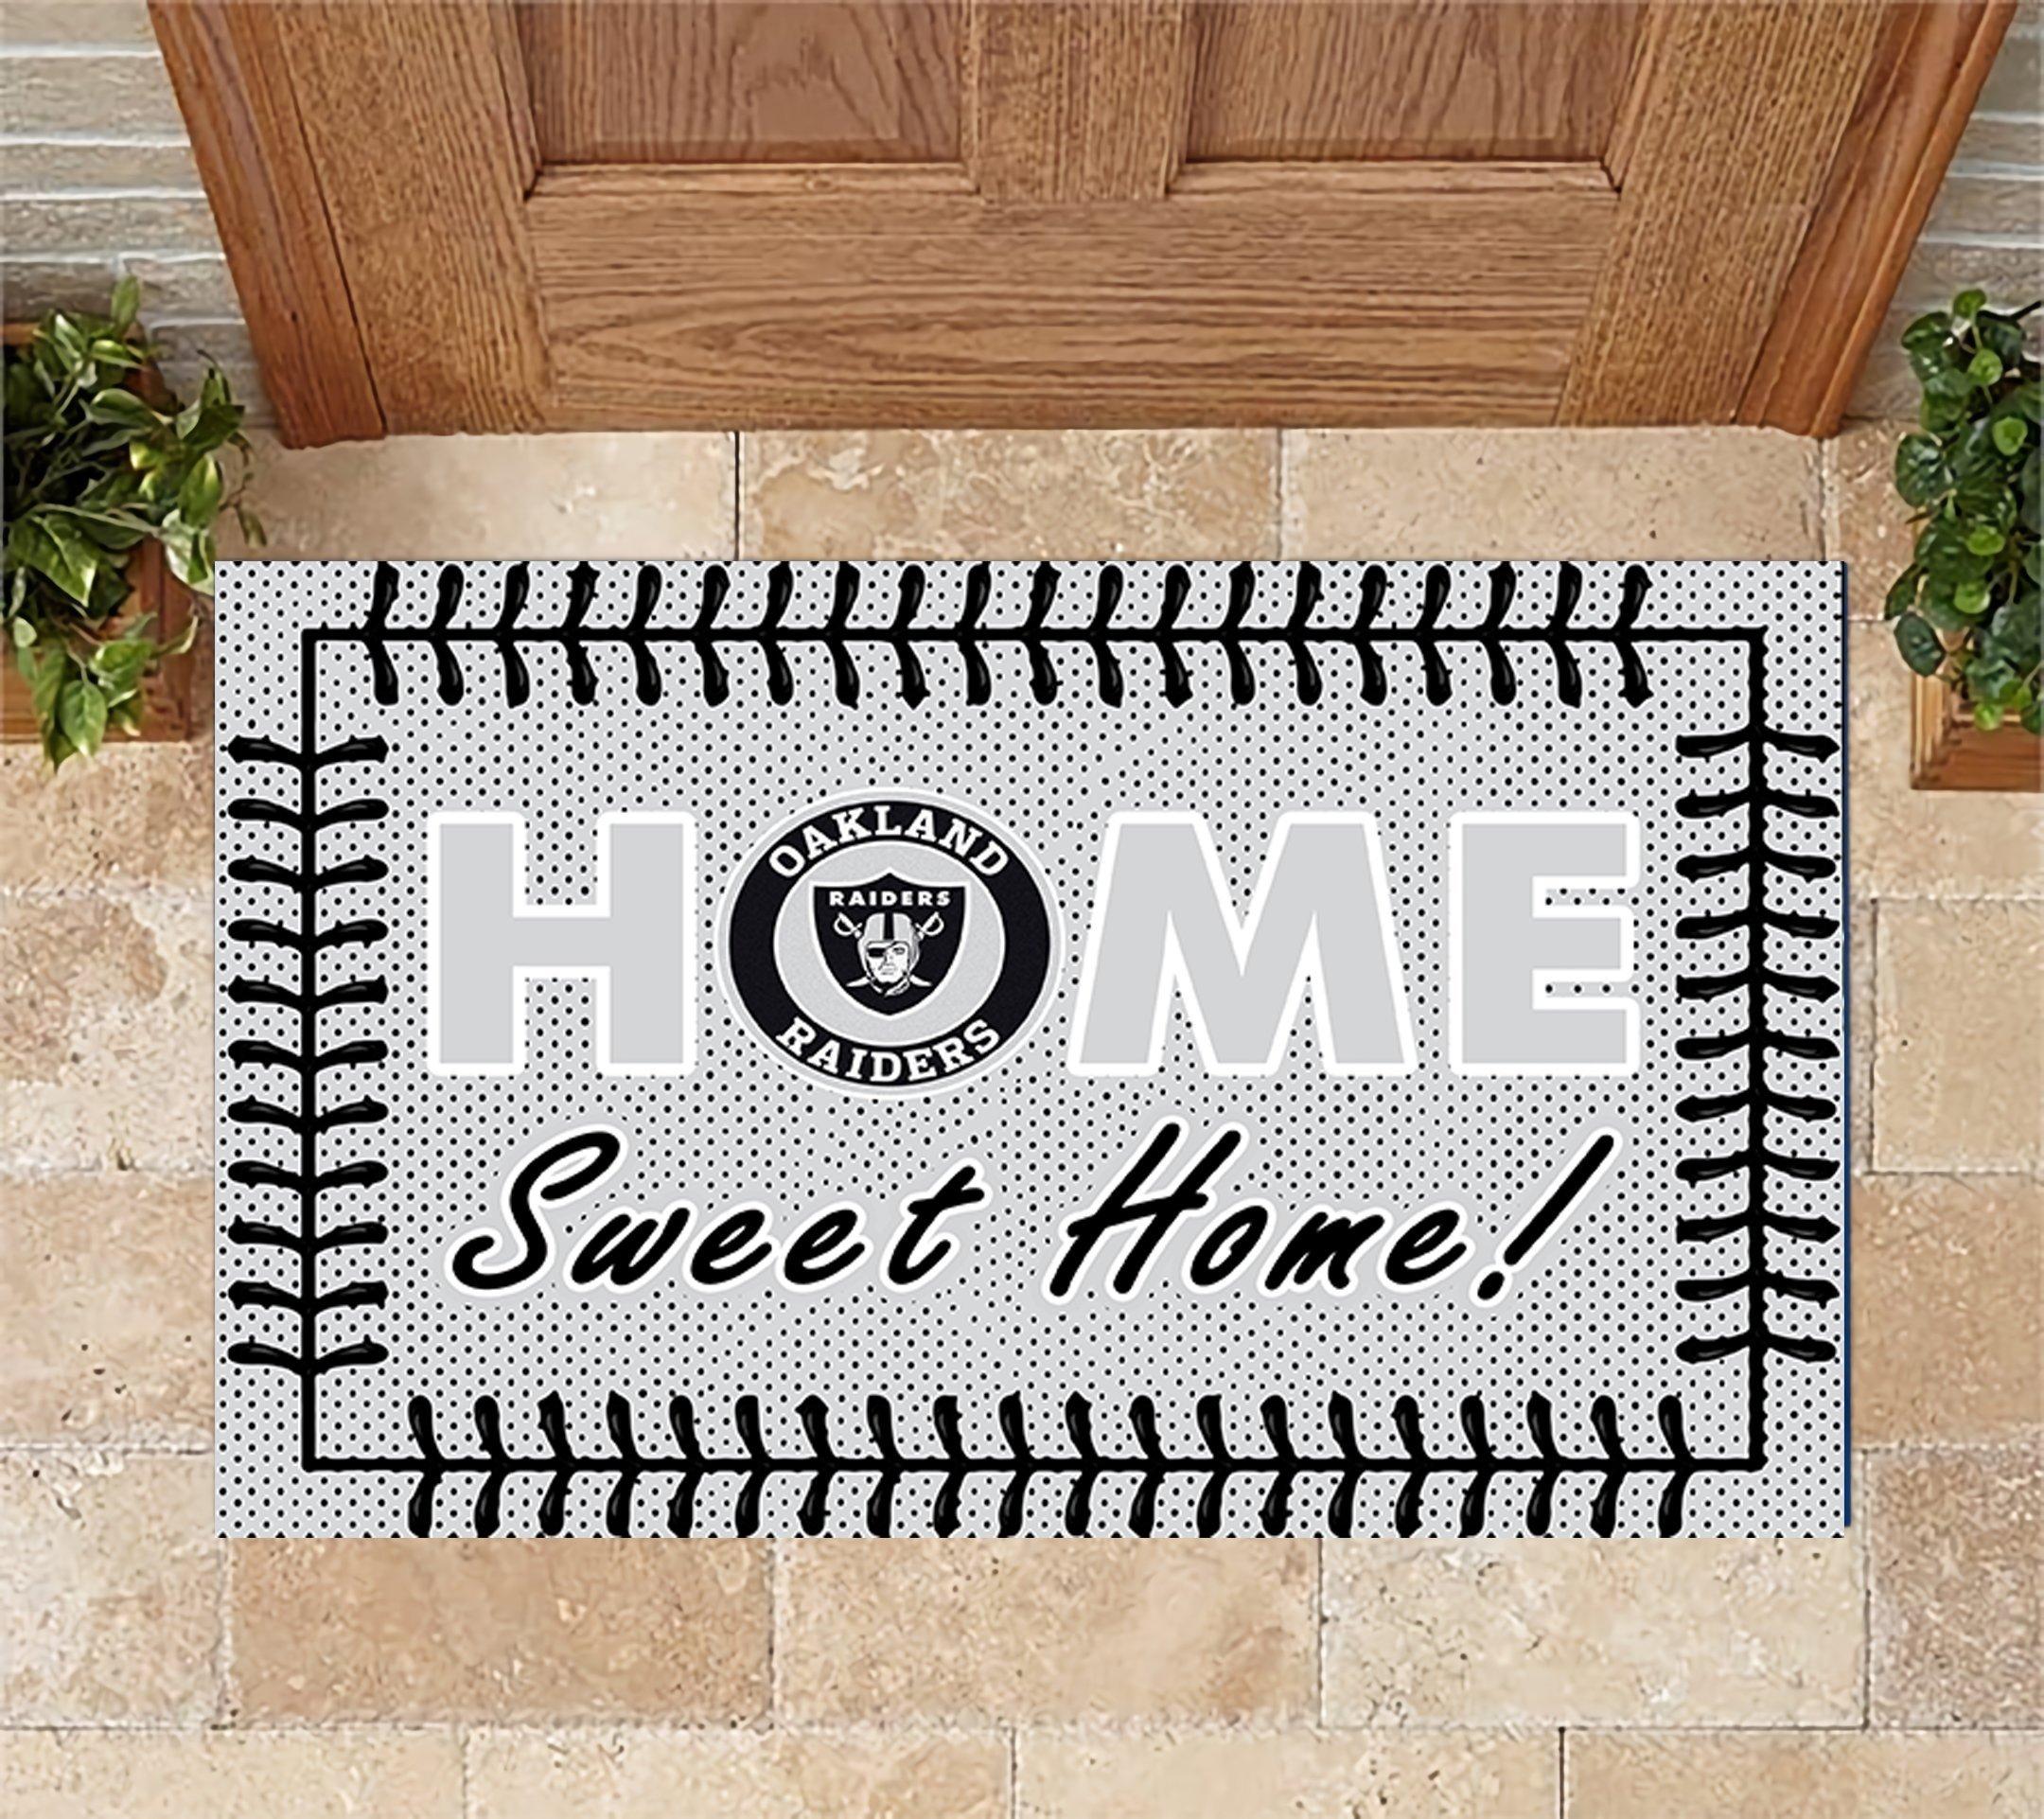 Oakland Raiders Home Sweet Home Doormat Doormat